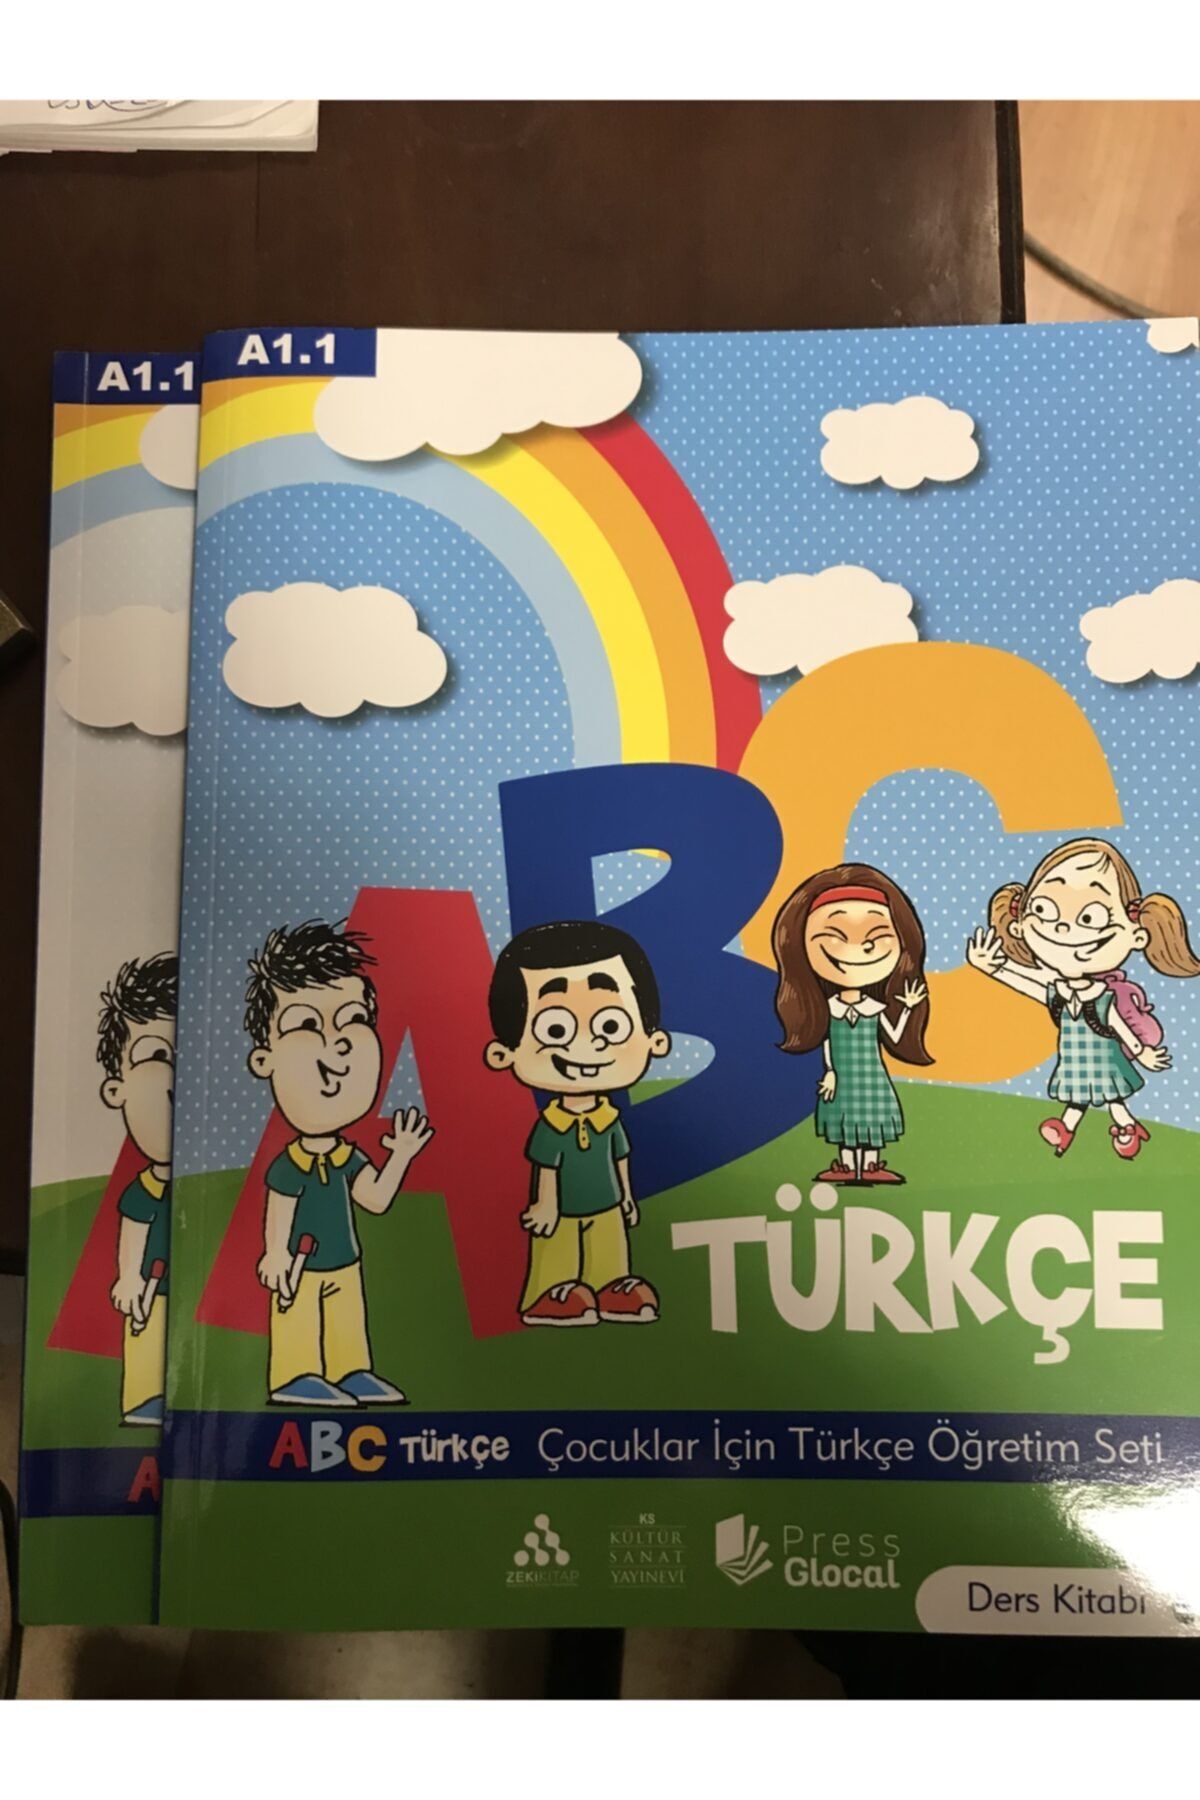 Kültür Sanat Basımevi Abc Yabancı Çocuklar Için Türkçe Öğrenim Seti A1.1